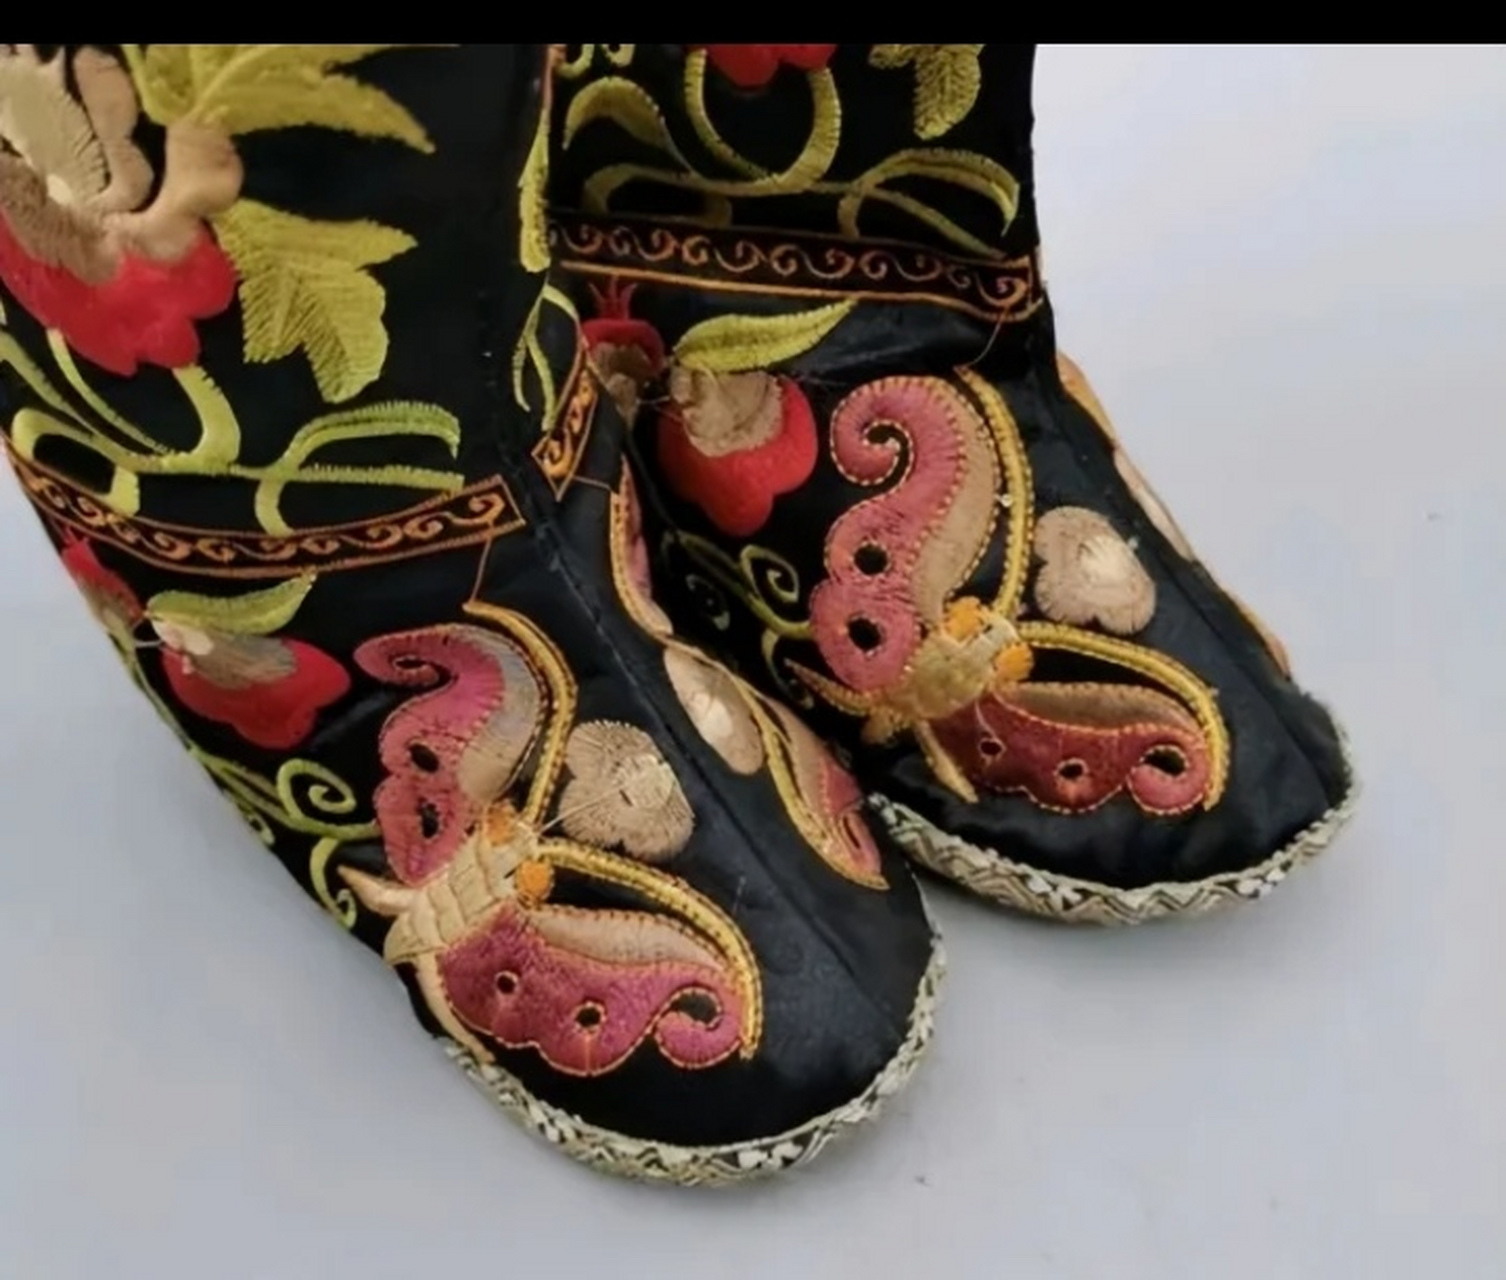 中国古代鞋子样式图片